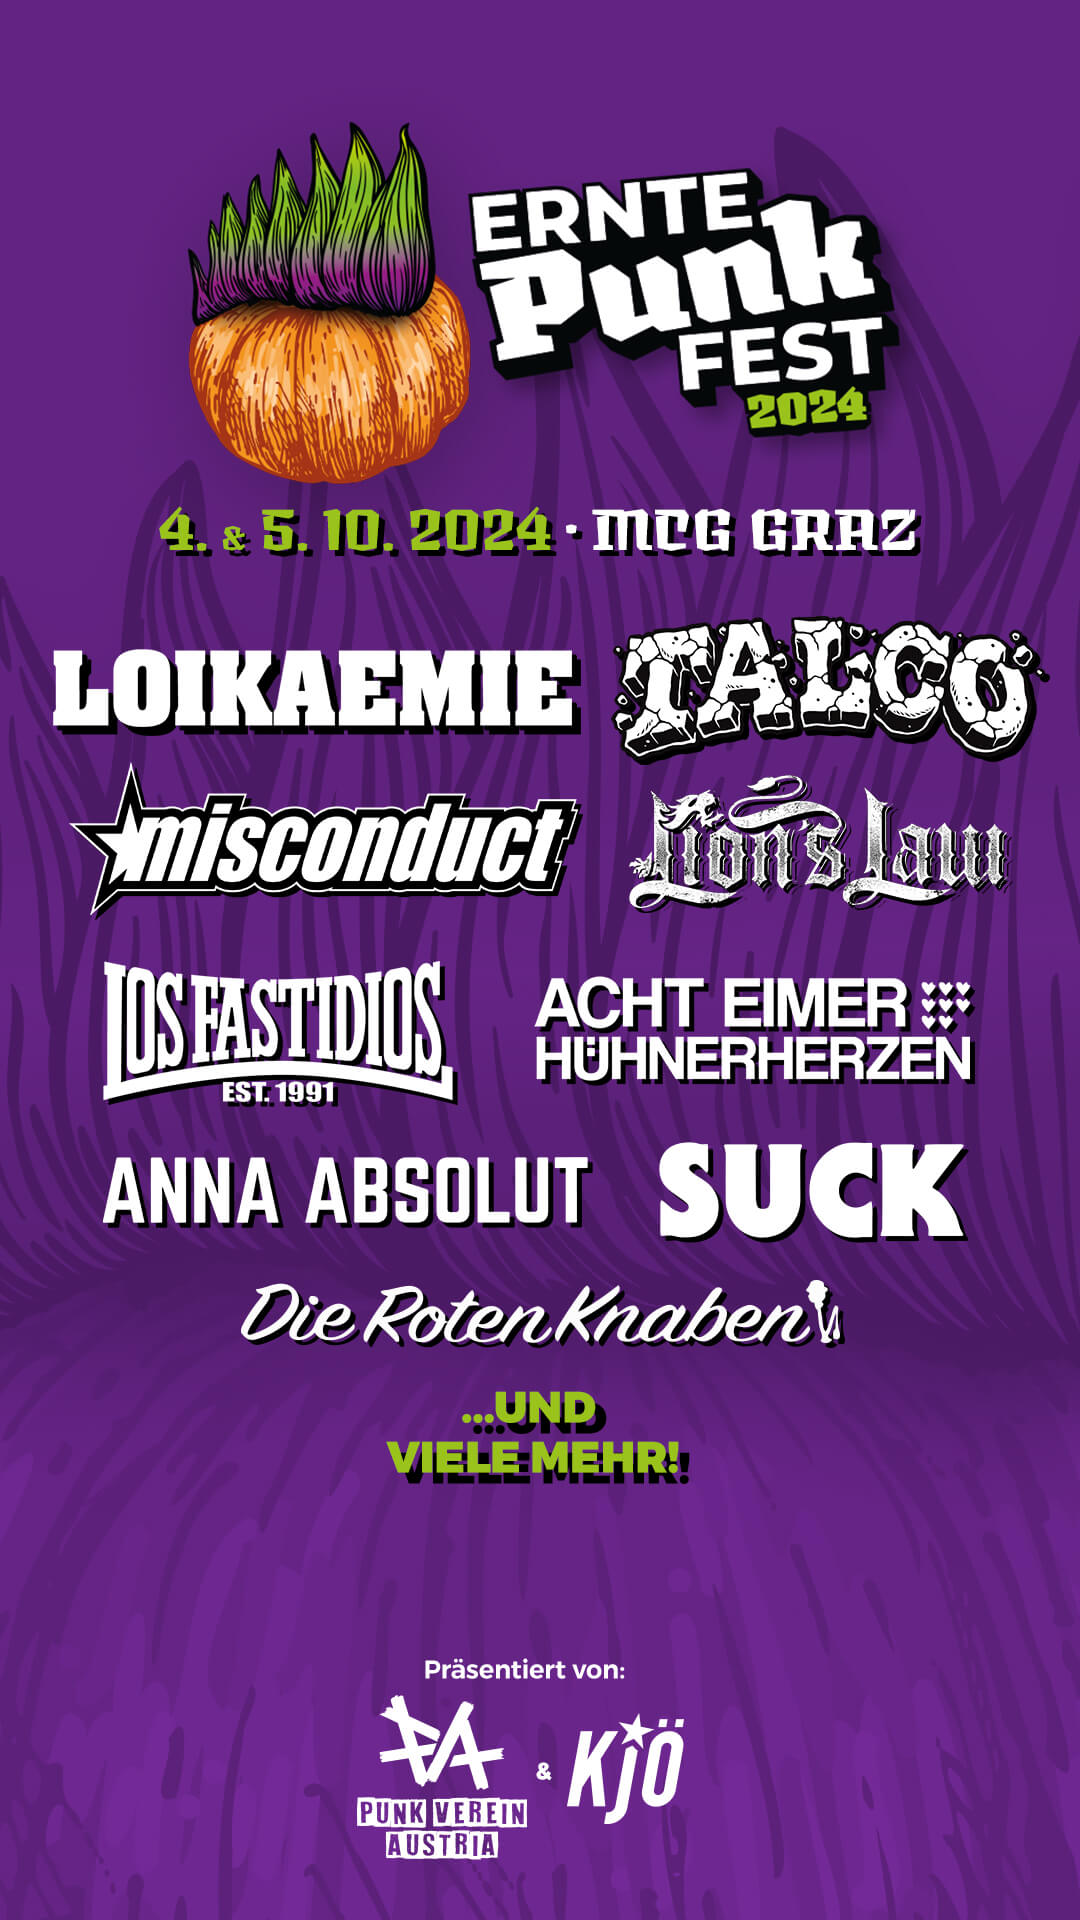 ErntePUNKfest 2024, Messe Graz